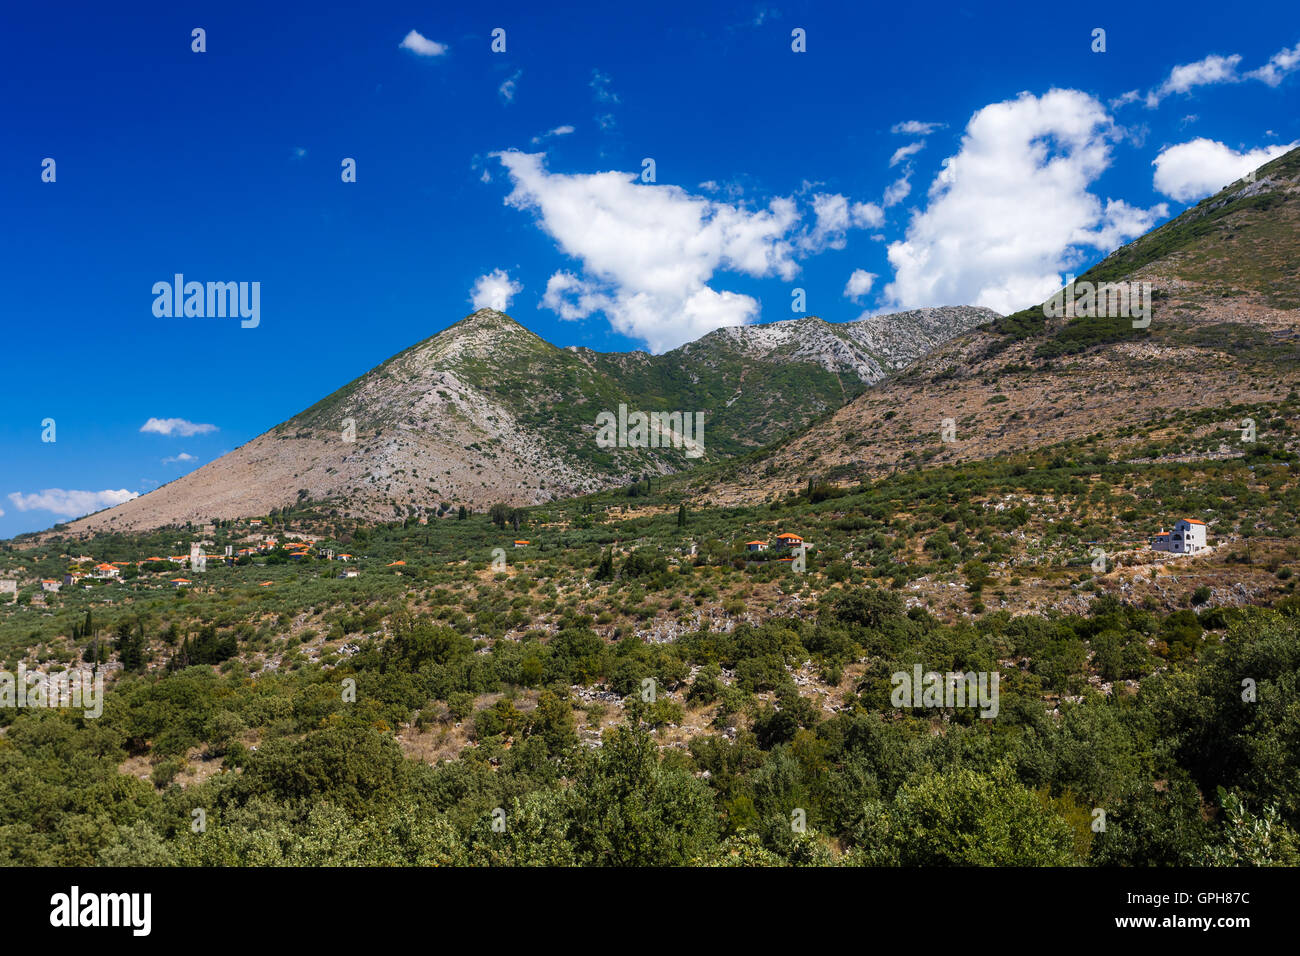 Das Taygetos-Gebirge in grünen Bäumen vor einem teilweise bewölkten Himmel bedeckt. Stockfoto